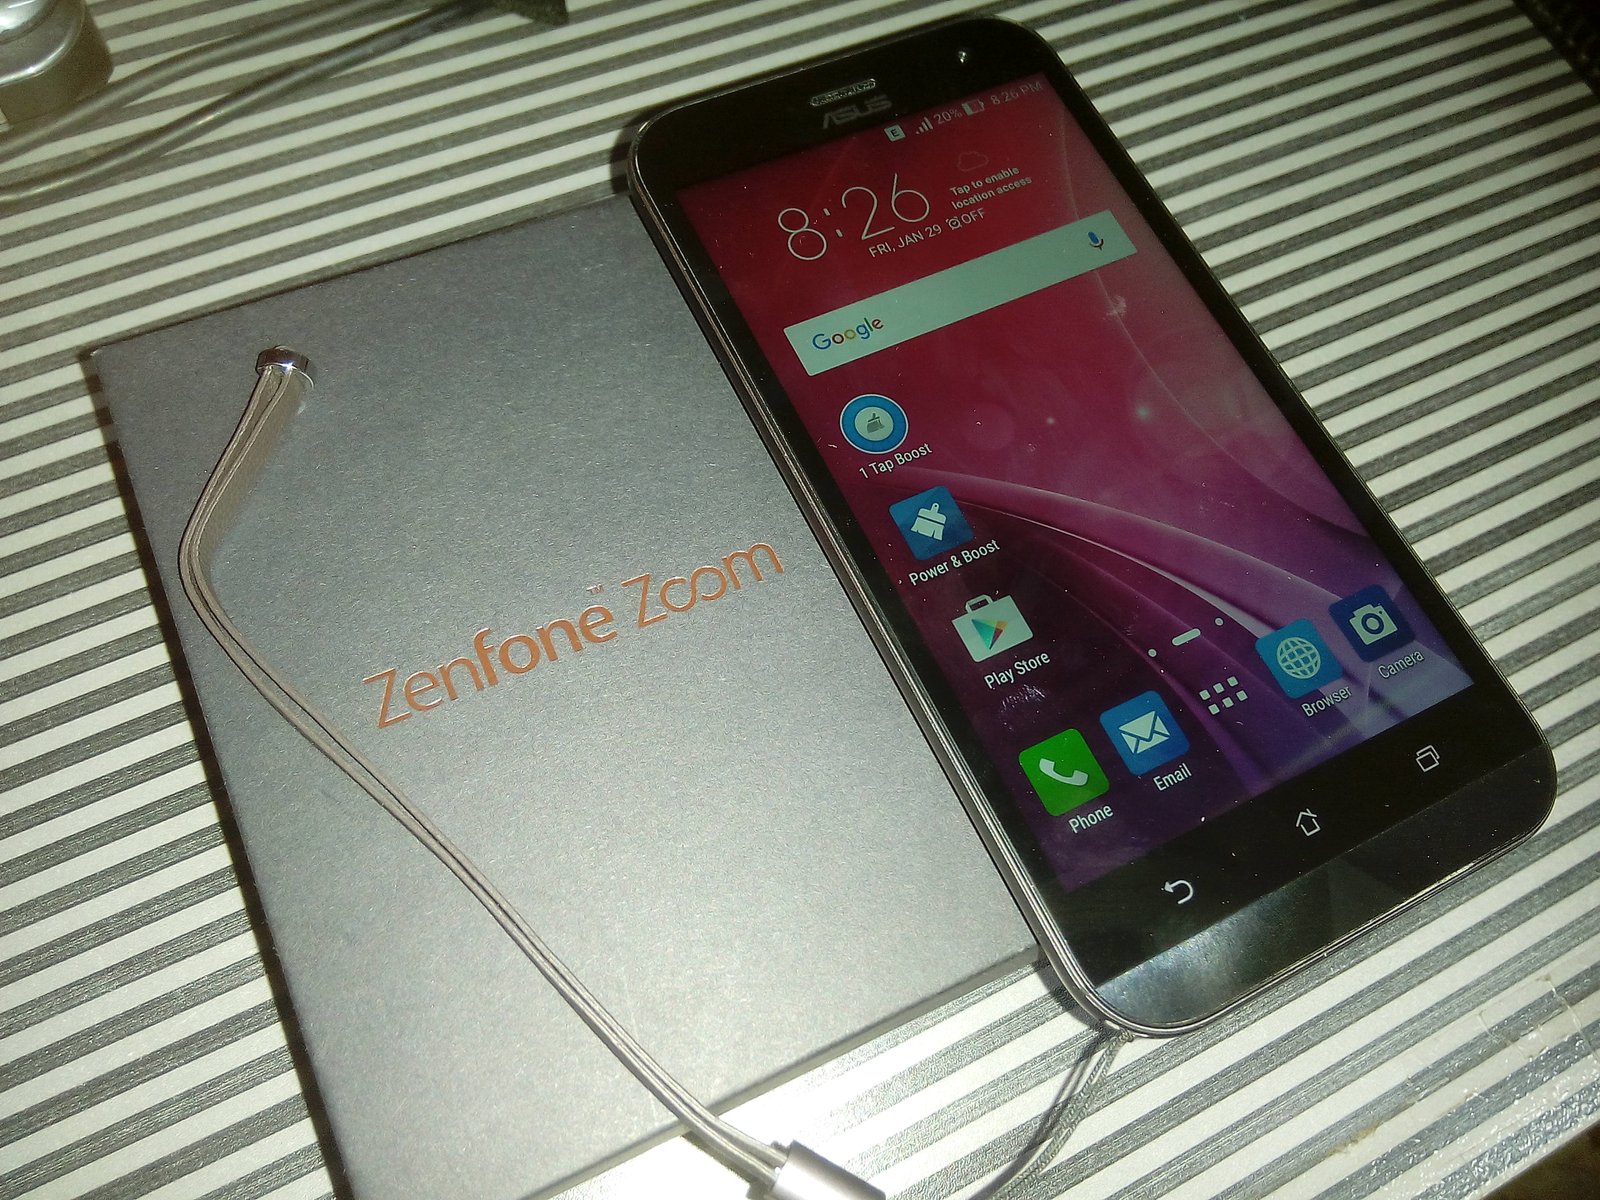 ASUS Zoom Zenfone Review